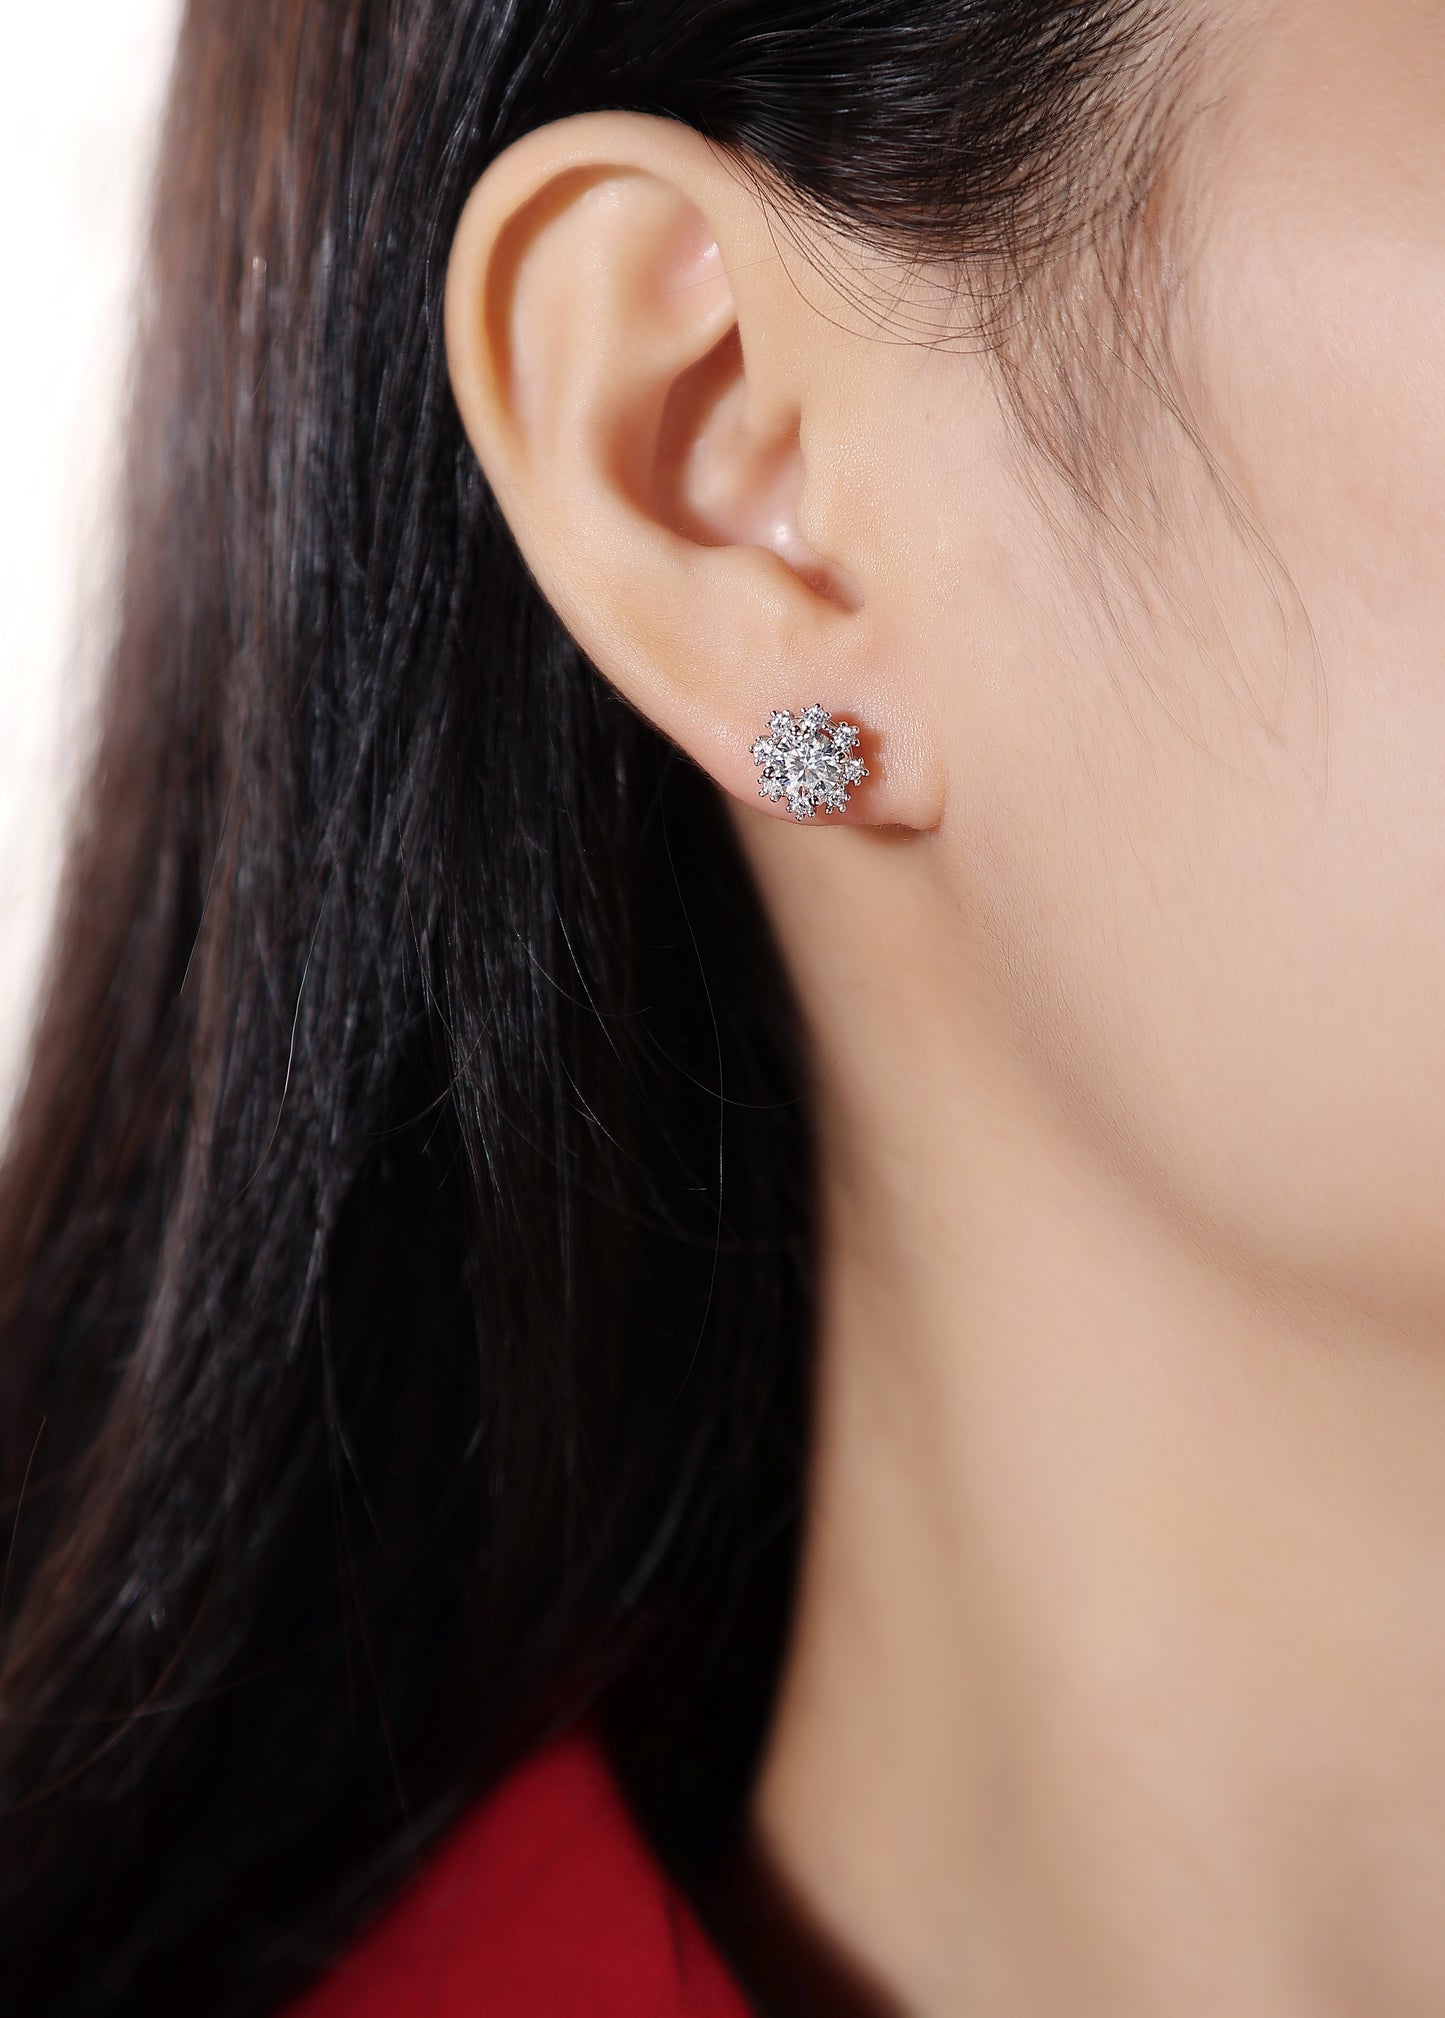 E18 Snow queen moissanite earrings E12679-5.0